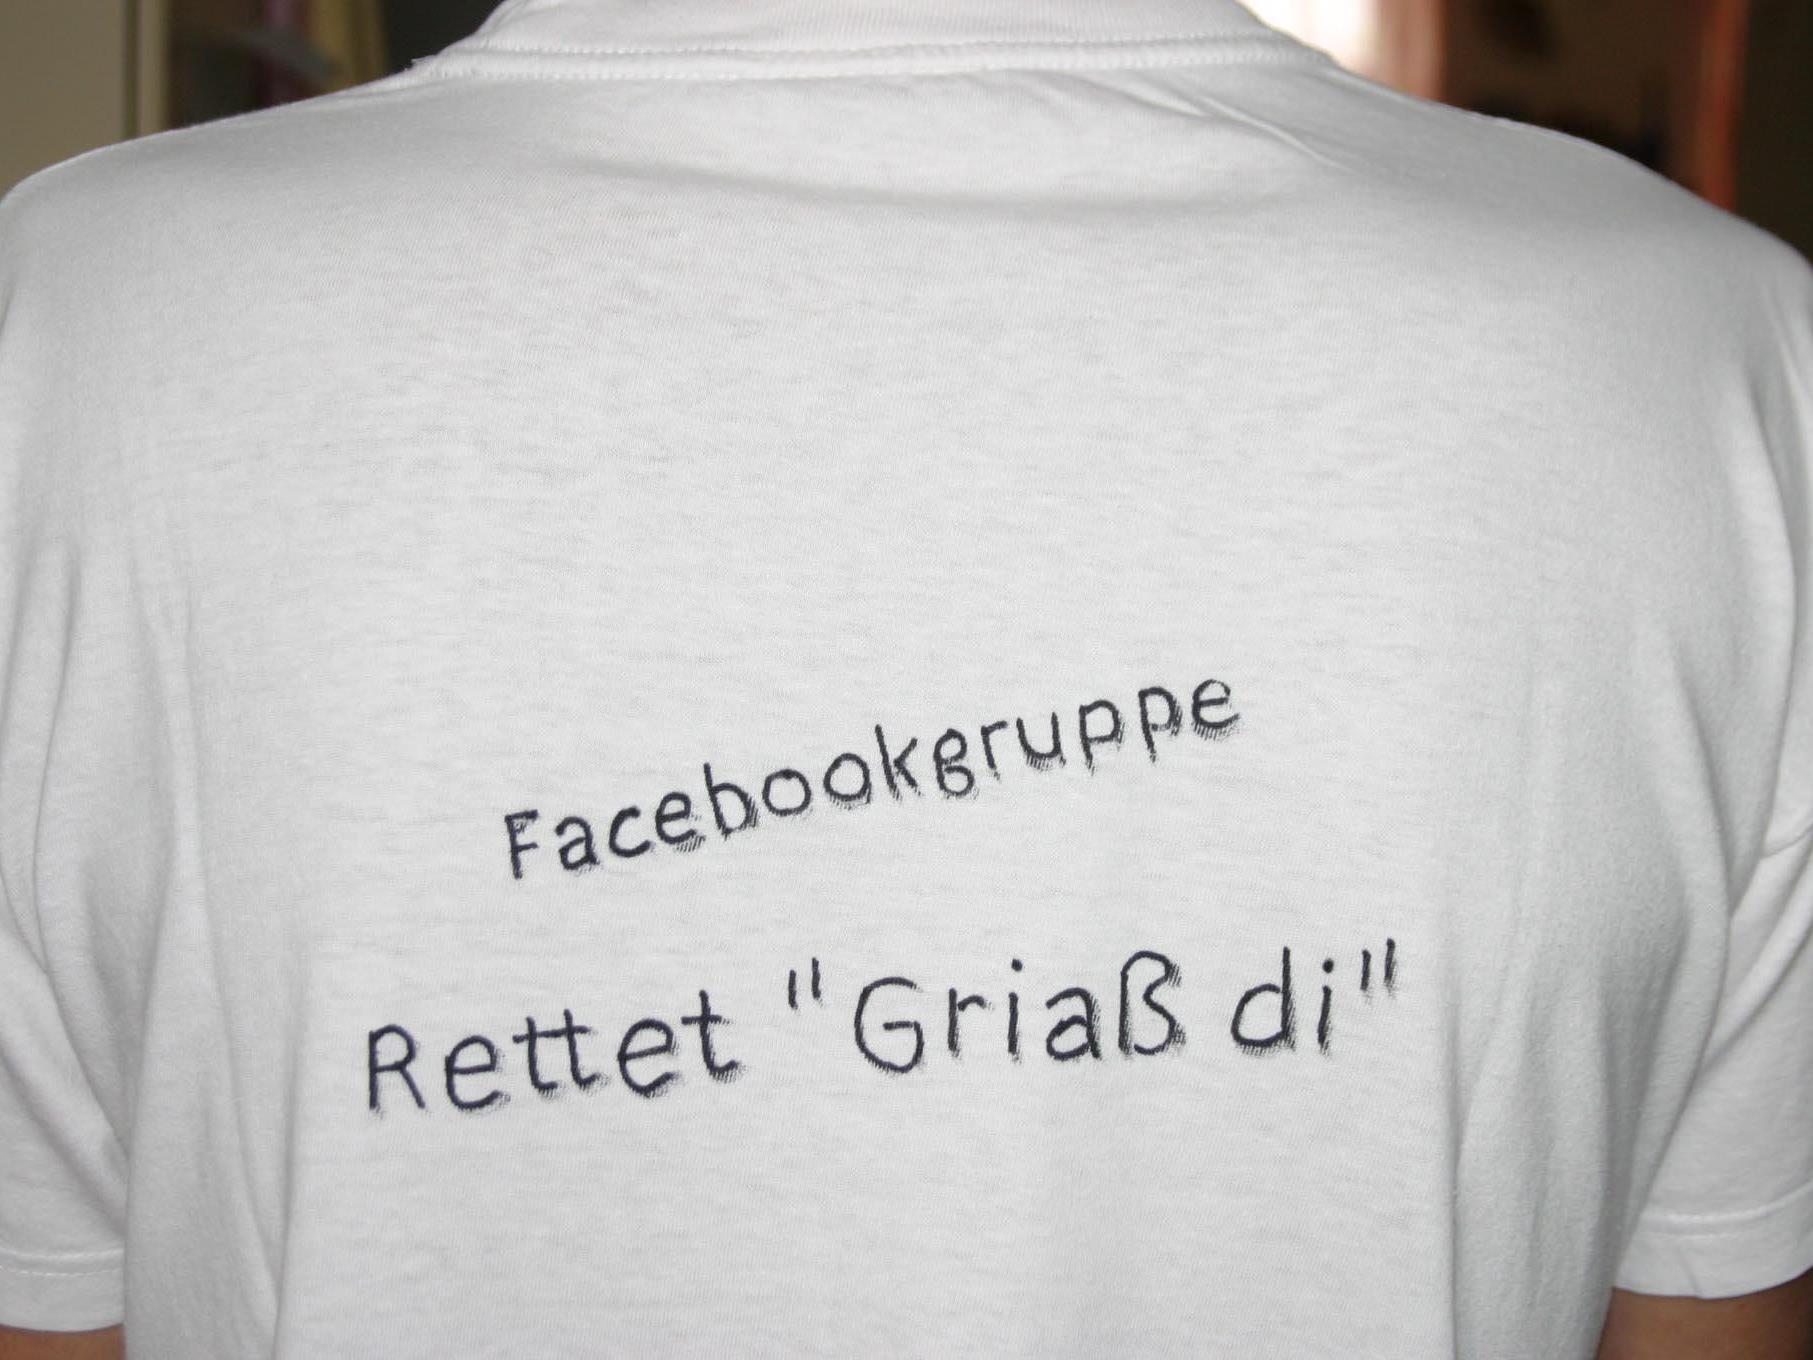 Mit T-Shirts wird gegen das "Griaß di"- Patent protestiert.